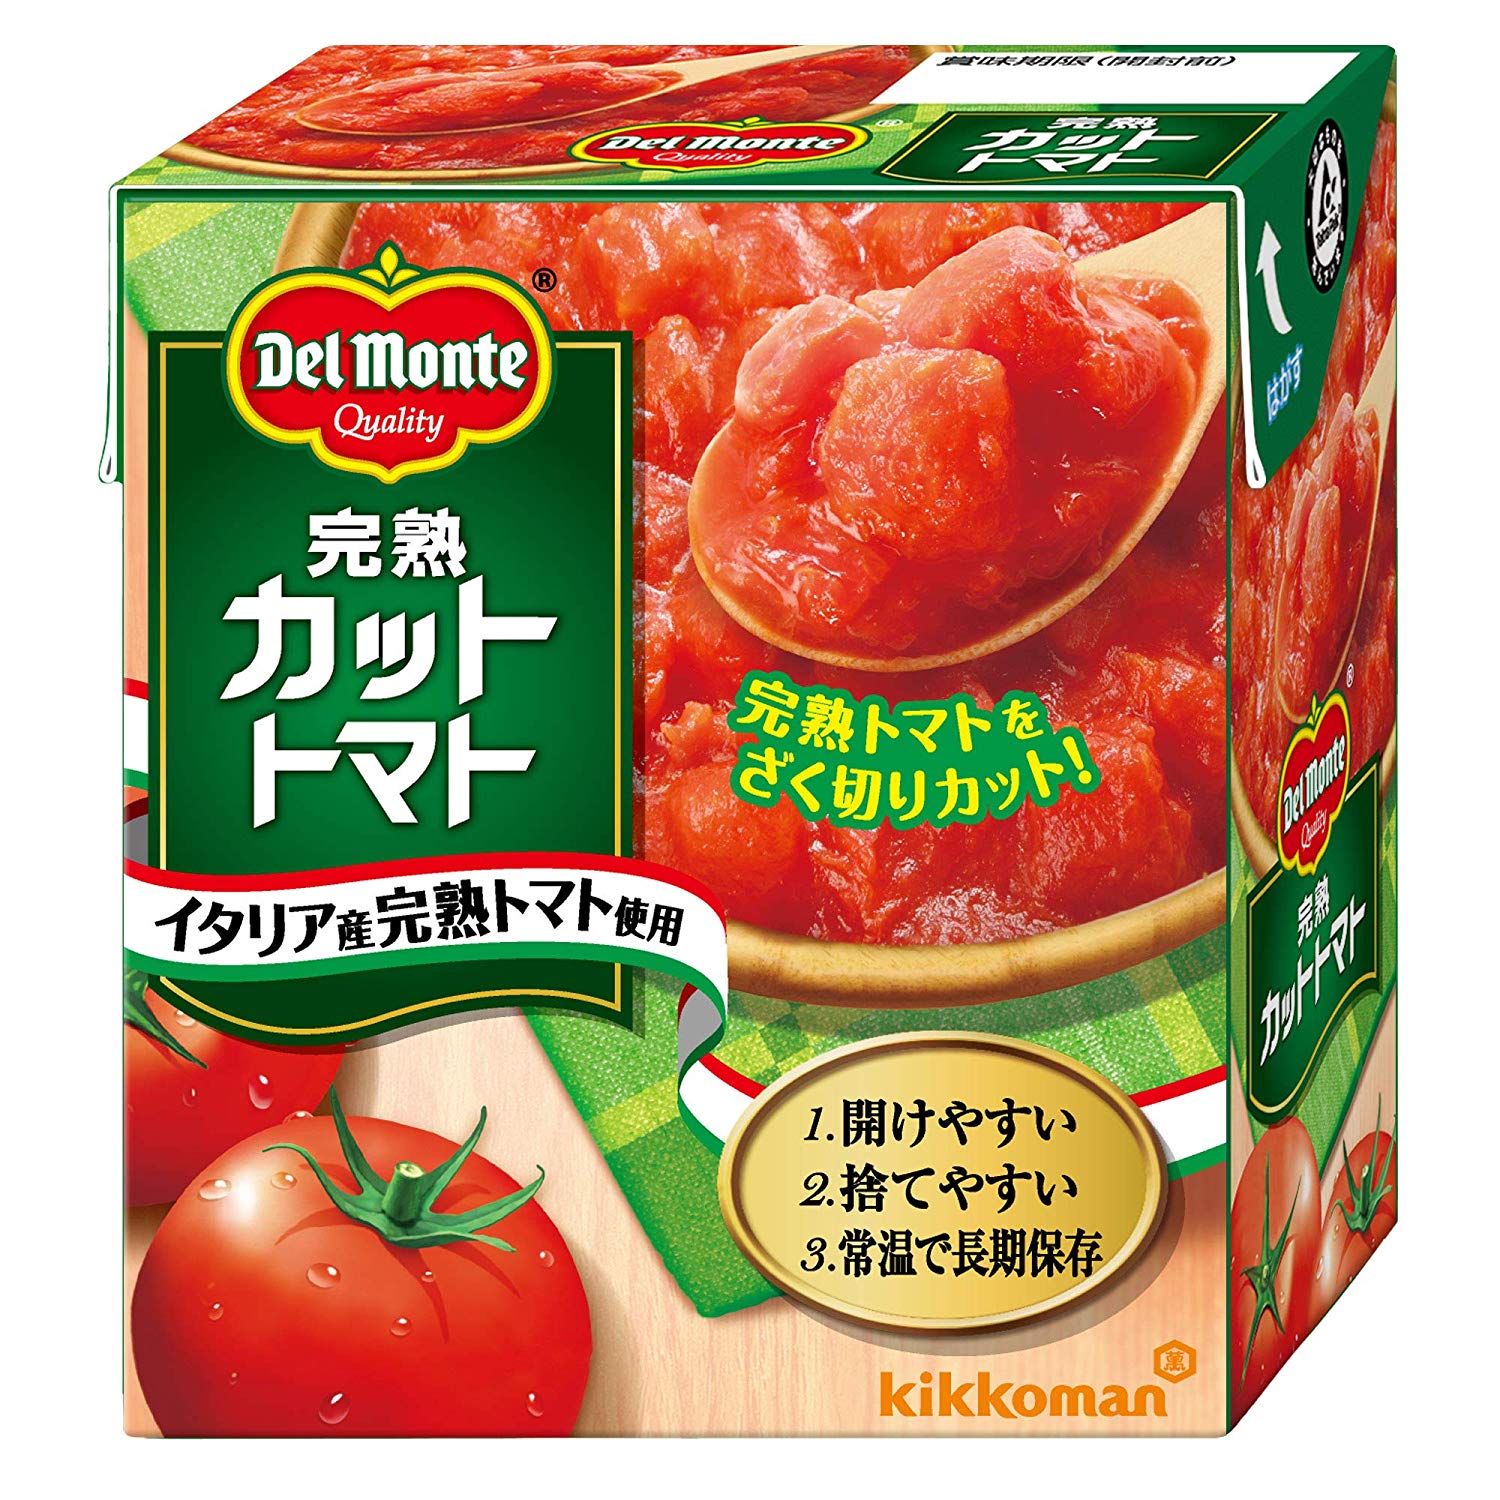 トマト缶のおすすめ7選 パスタやスープなどに Heim ハイム